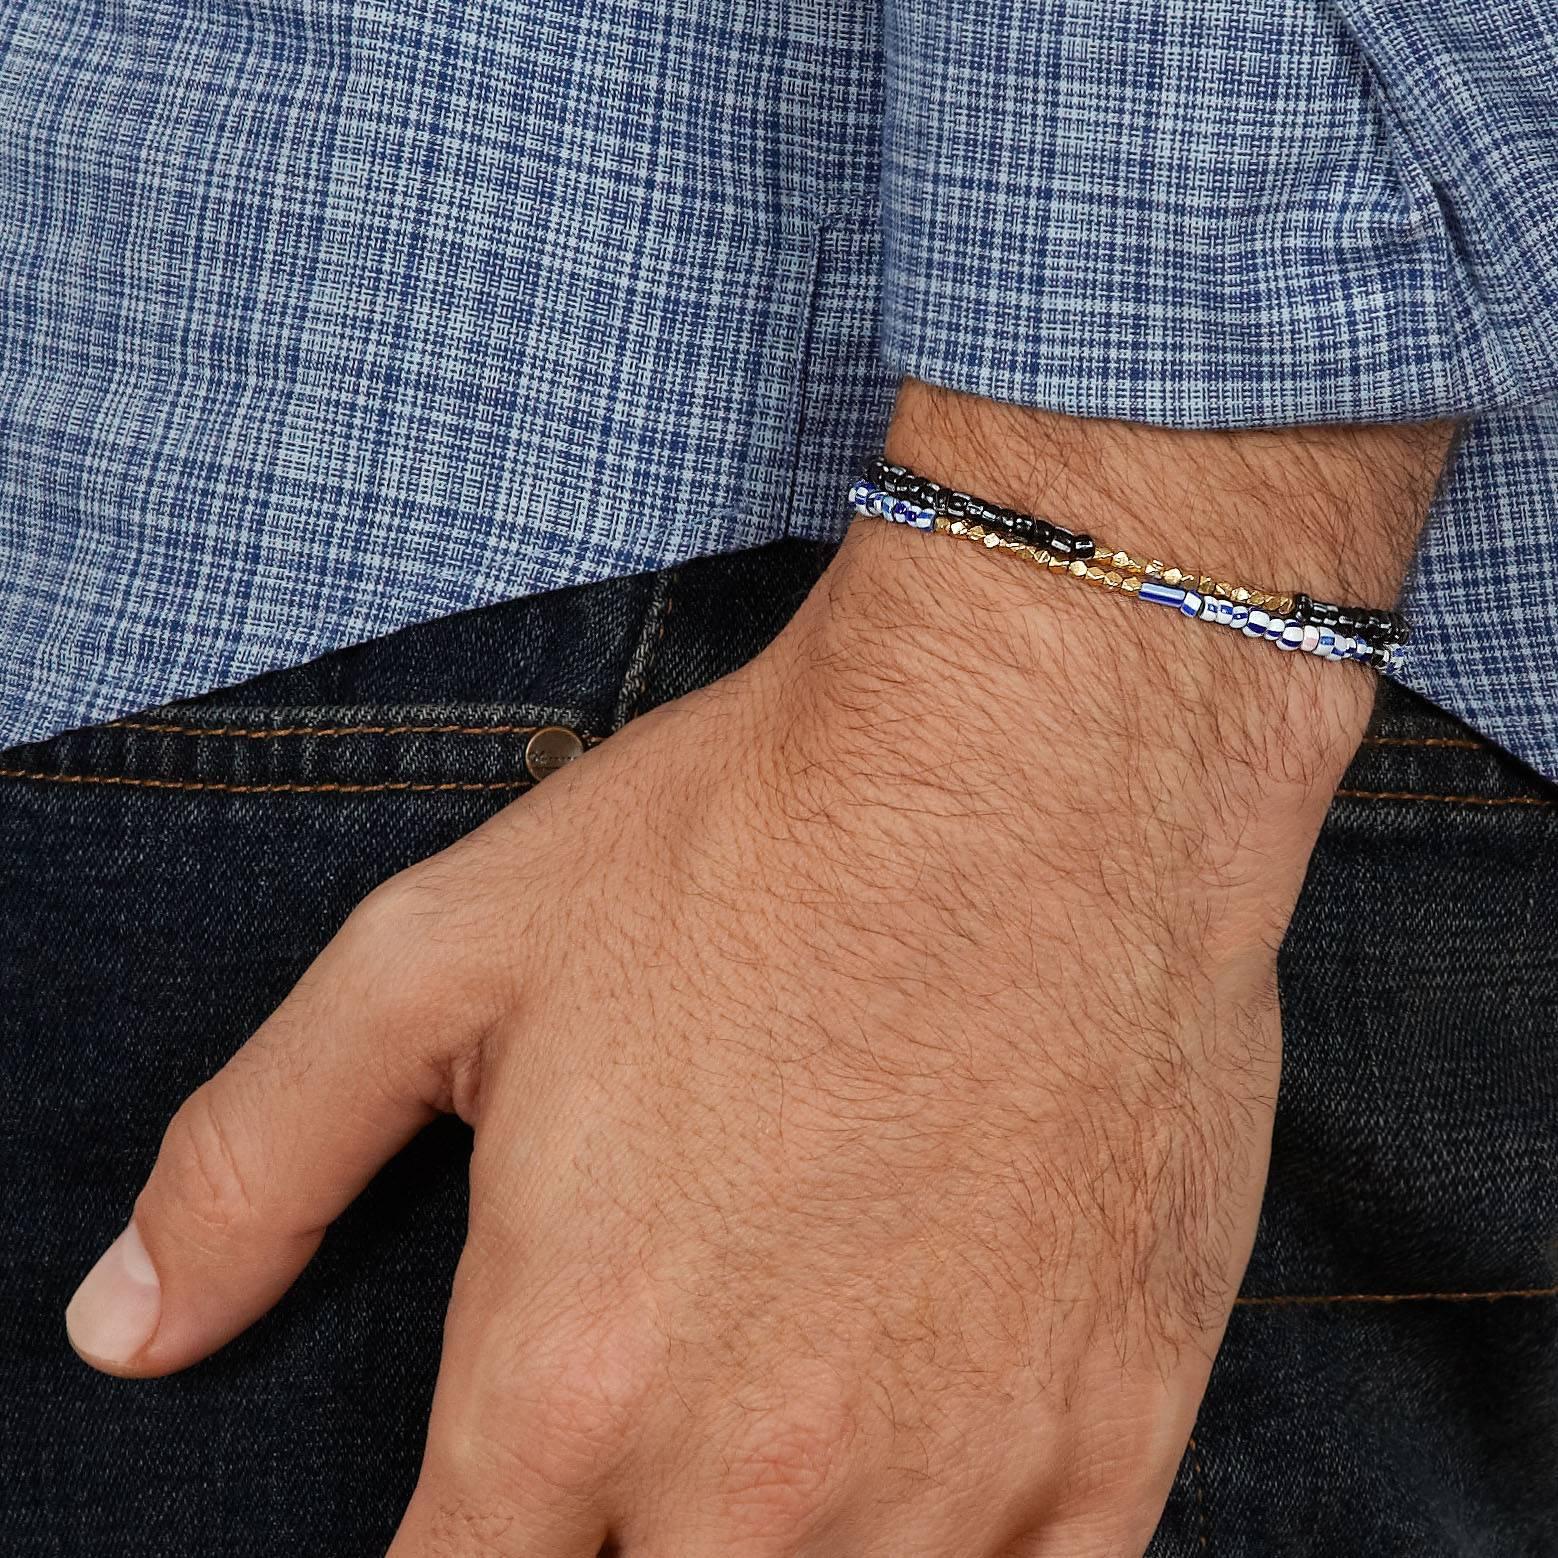 Dieses Armband besteht aus antiken gemischten blauen venezianischen Glasperlen, die mit einem Zoll massiven, gegossenen 14-karätigen Weißgoldperlen akzentuiert sind.  Die Struktur ist stark, gespannt und elastisch.

Diese antiken venezianischen